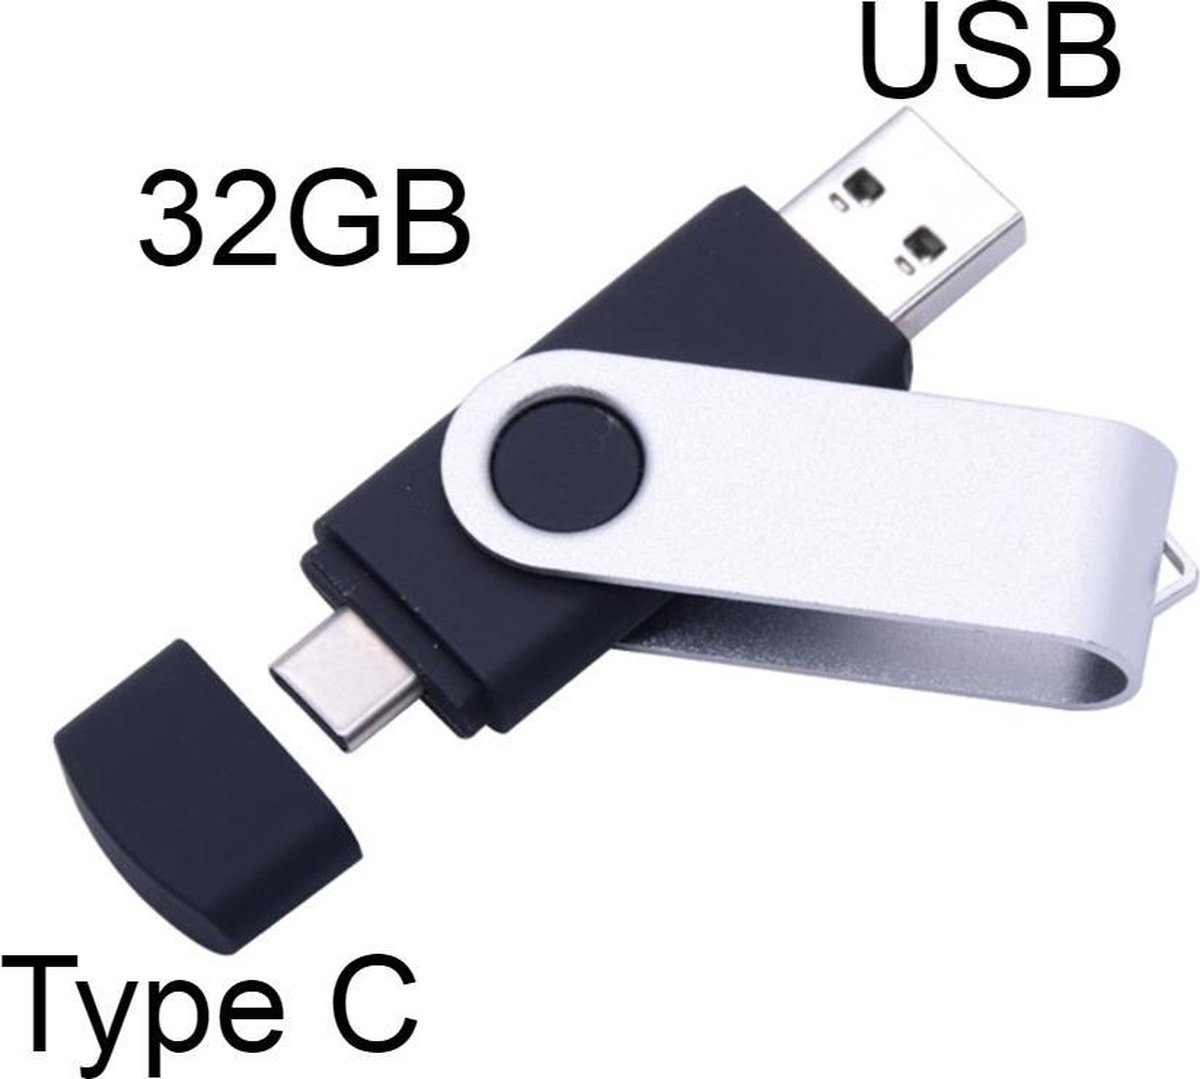 Immoraliteit vasthouden fluit USB-Stick met Type-C aansluiting - OTG (On The Go) - USB 3.0 Type-A + USB  3.1 Type-C -... | bol.com